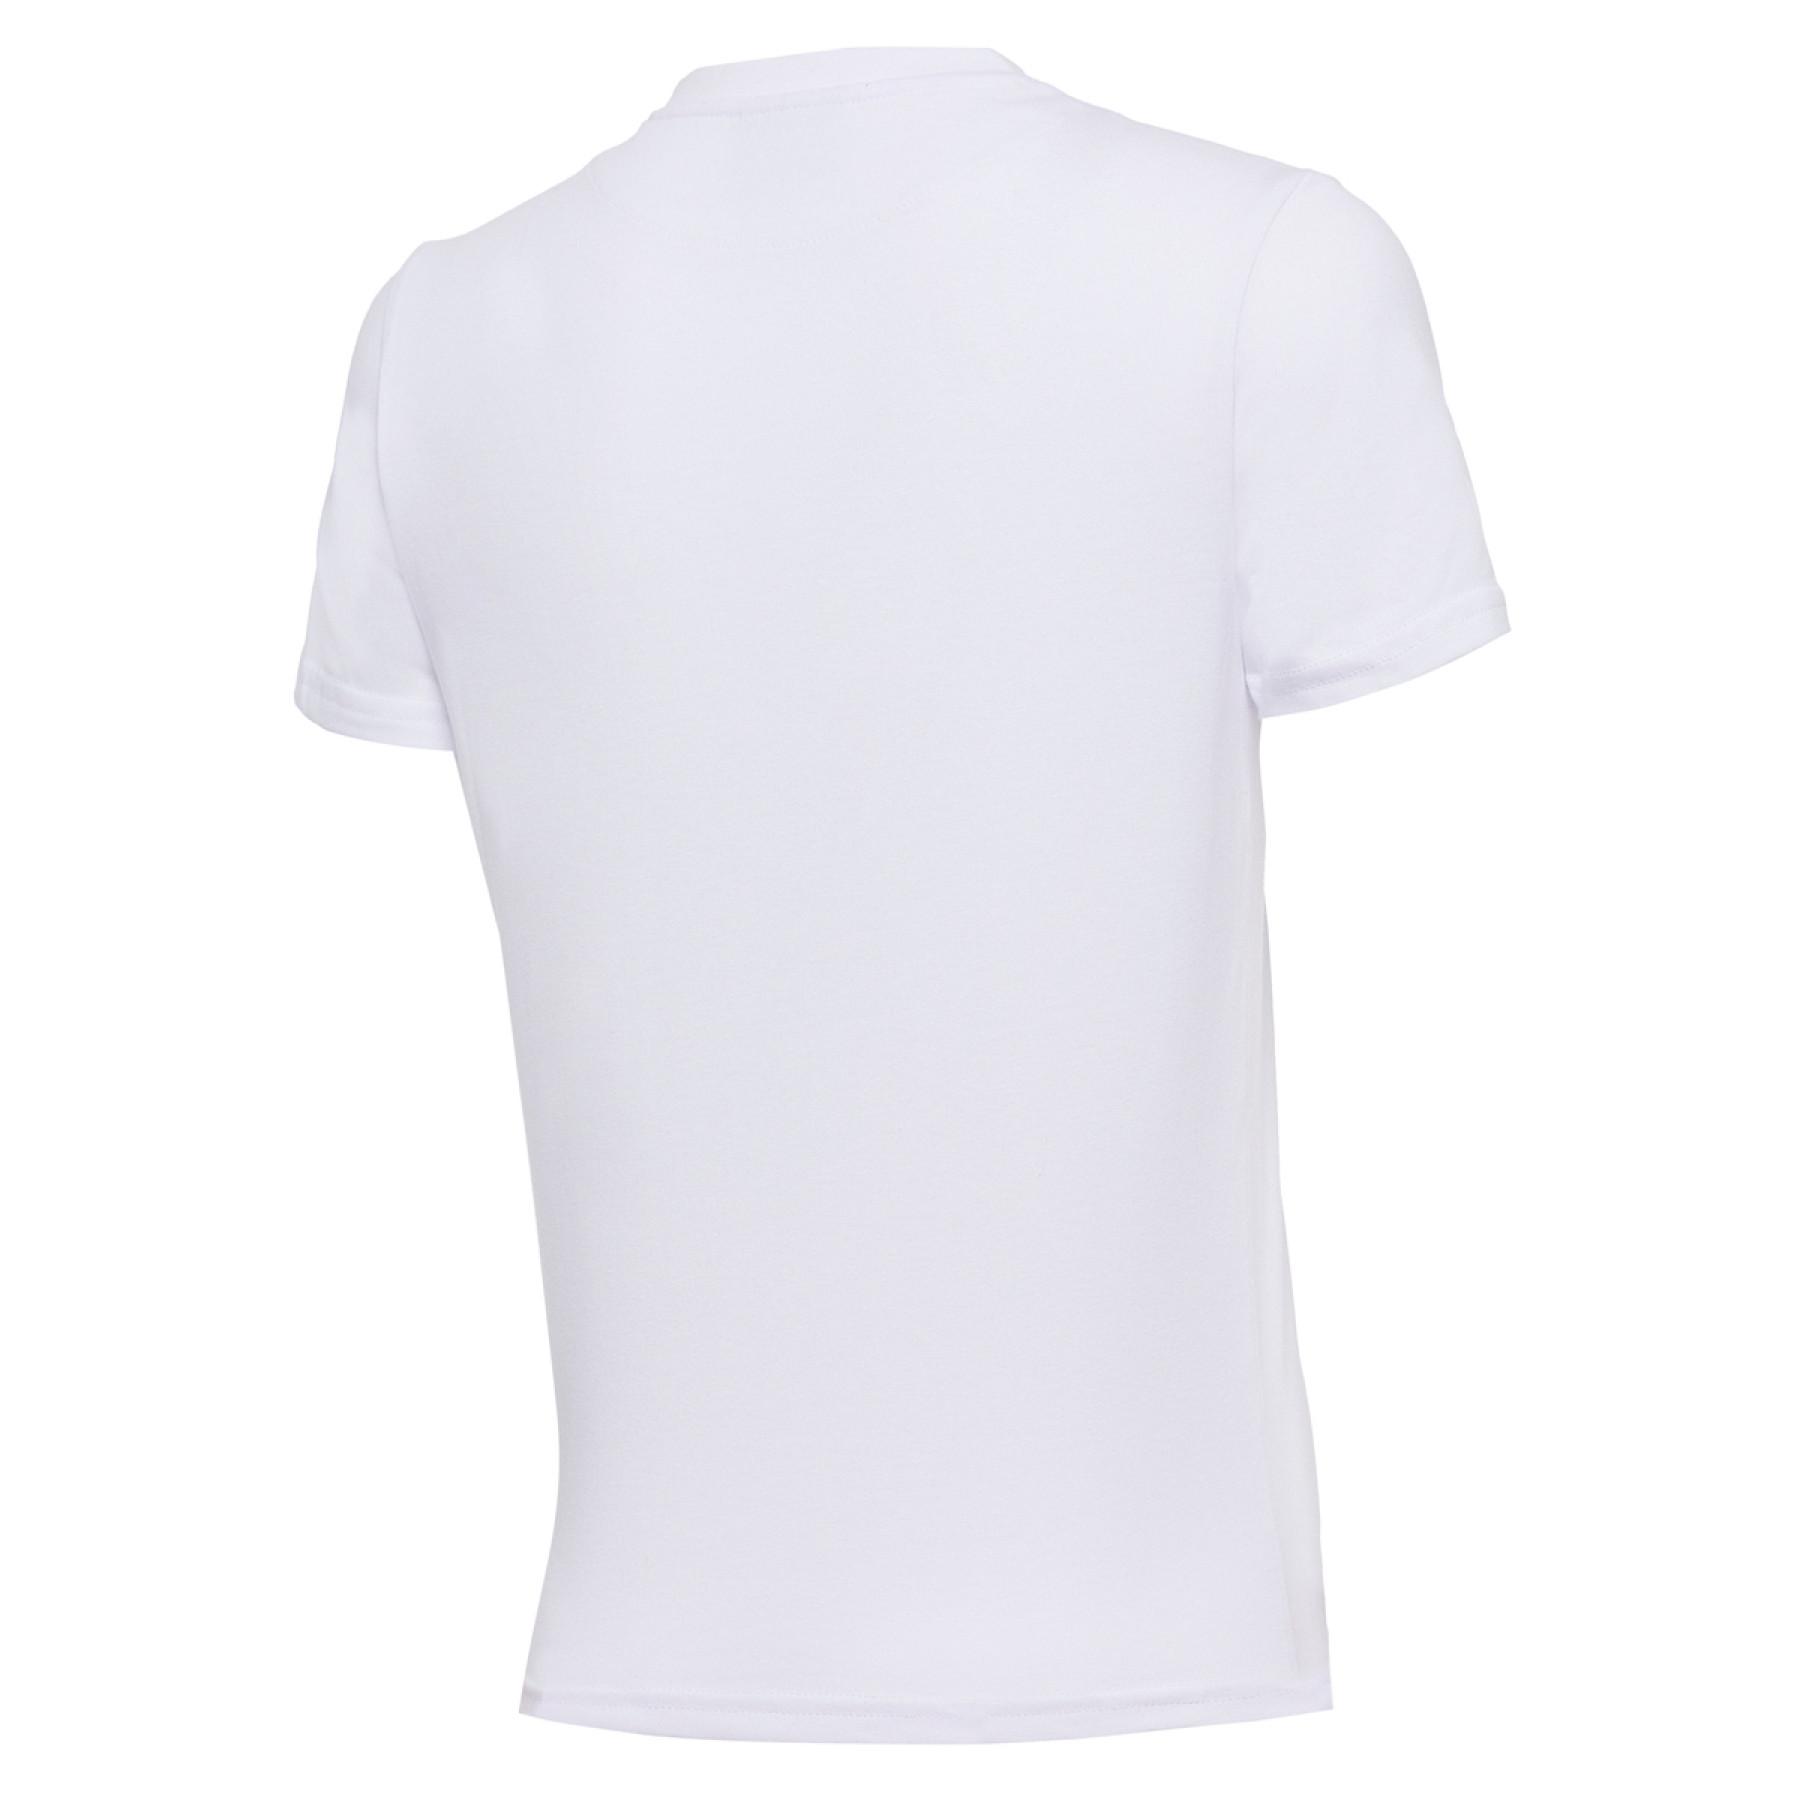 Child cotton T-shirt Bologne 2020/21